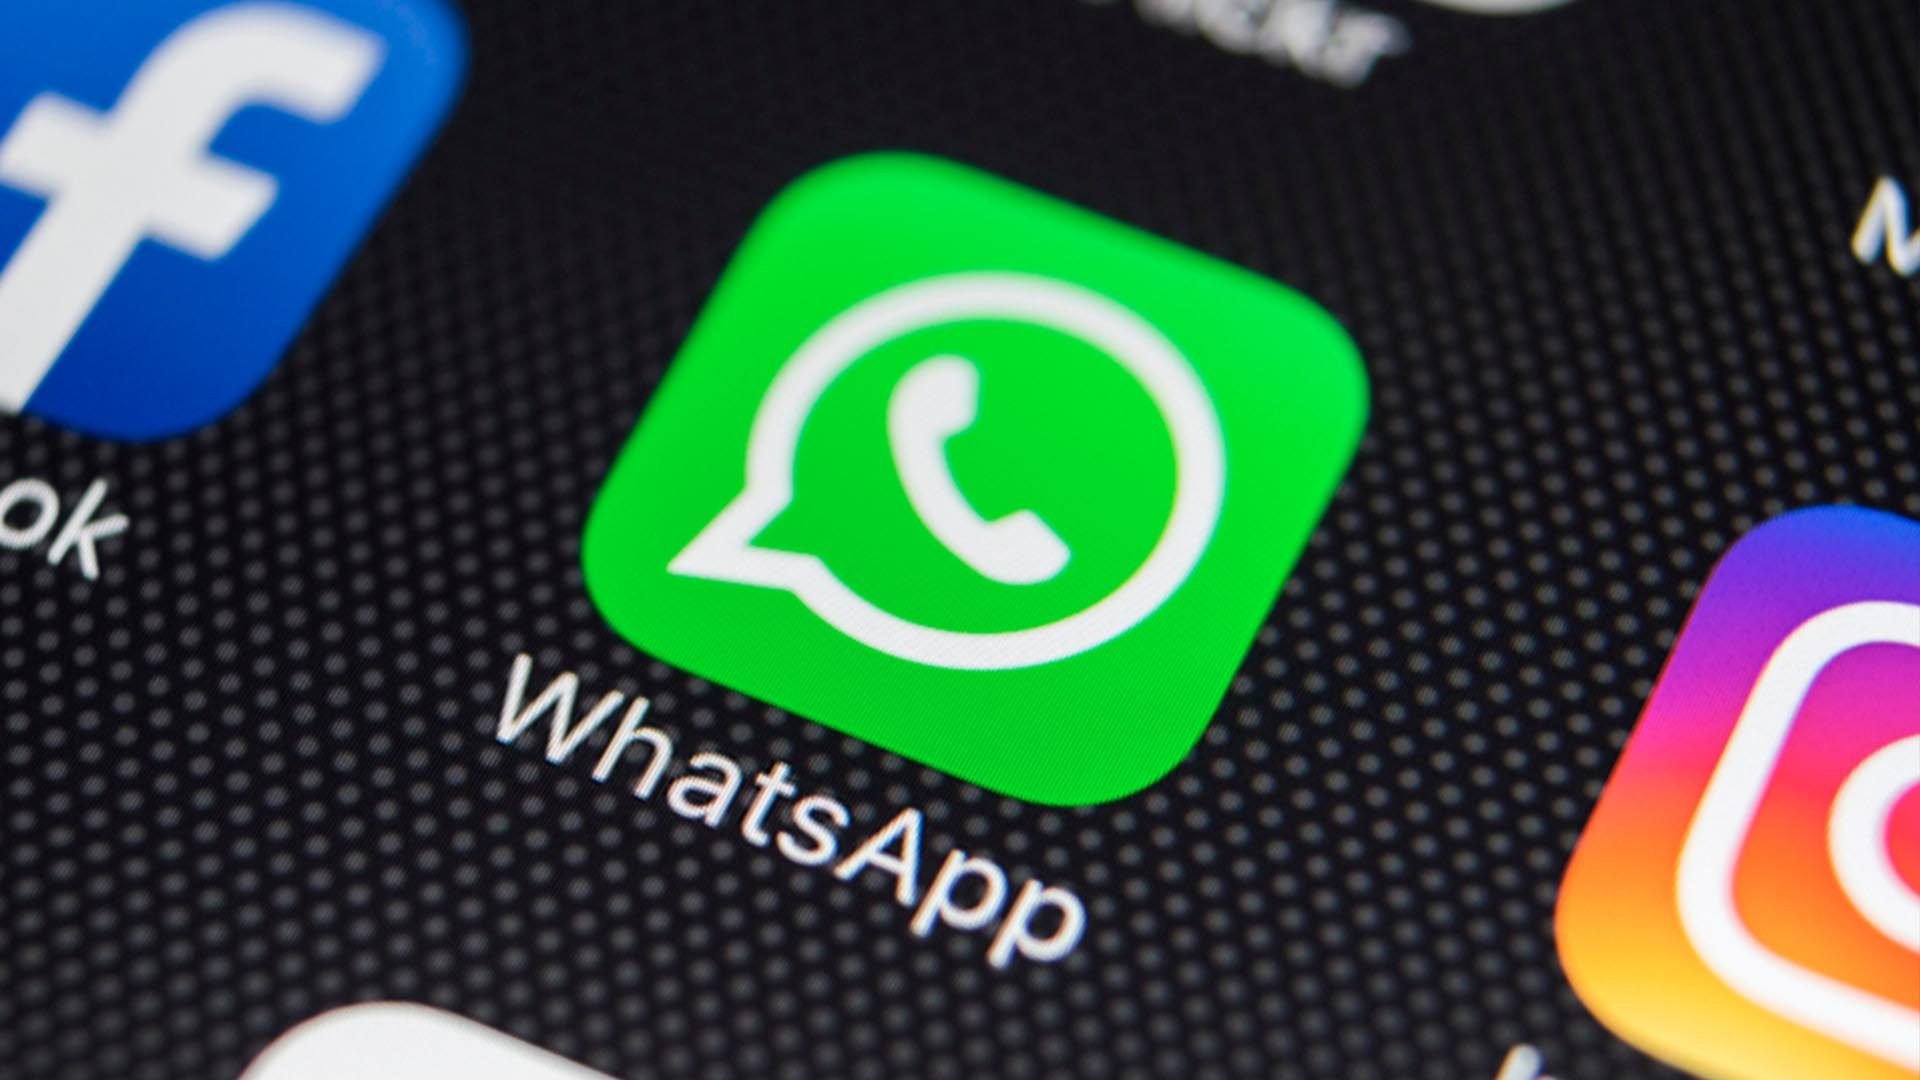 Lo último En Whatsapp ¿cómo Ver Los Mensajes Con El Celular Apagado El Economista 4261